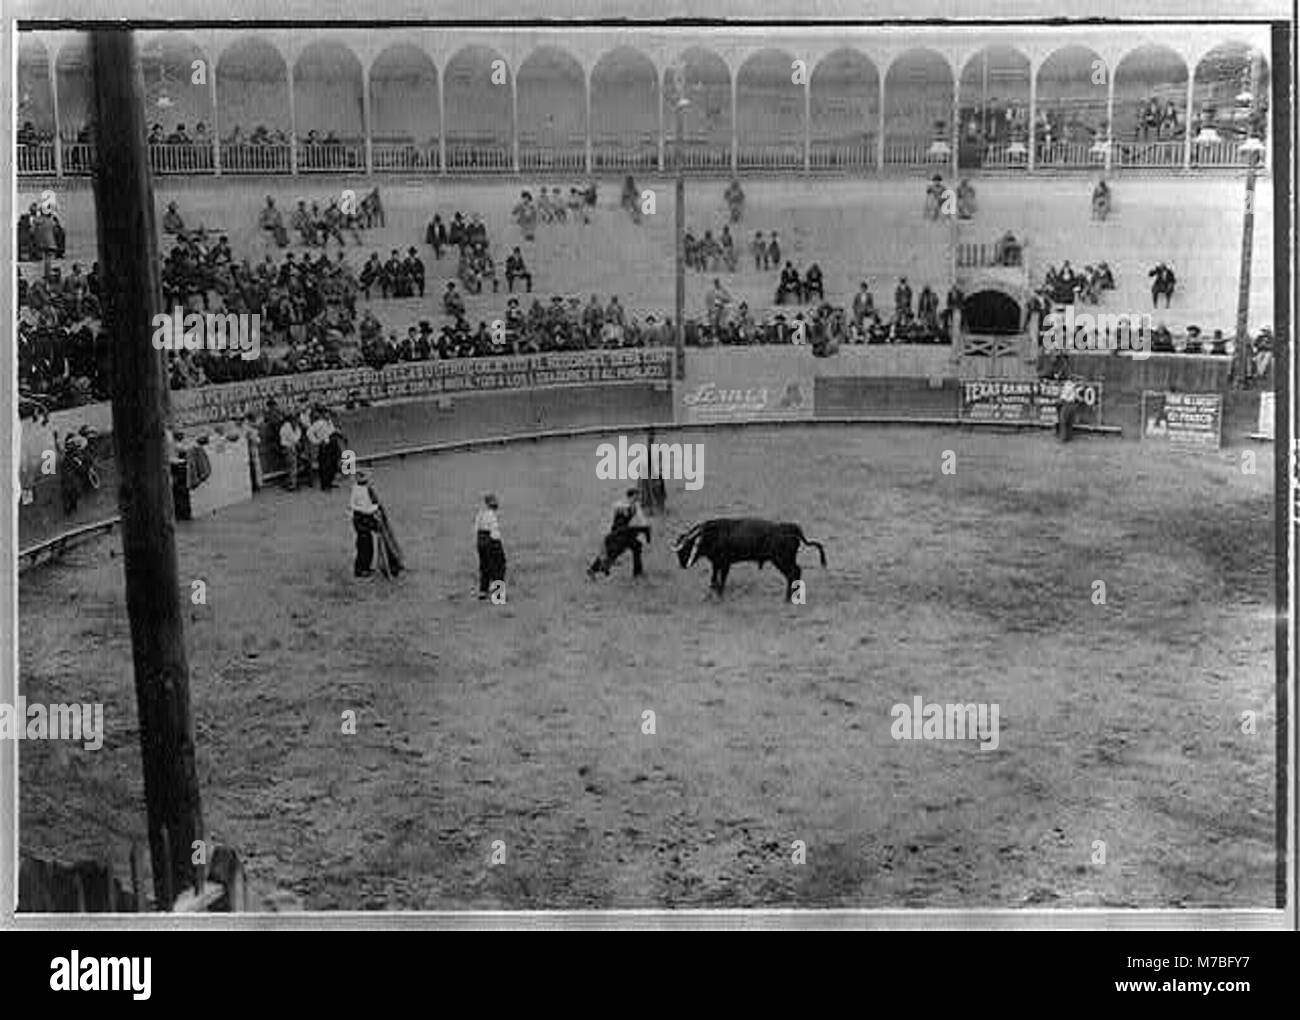 Corrida, le Mexique- matador et bull en arena ; tête de taureau est à gauche. Rcac2002709507 Banque D'Images